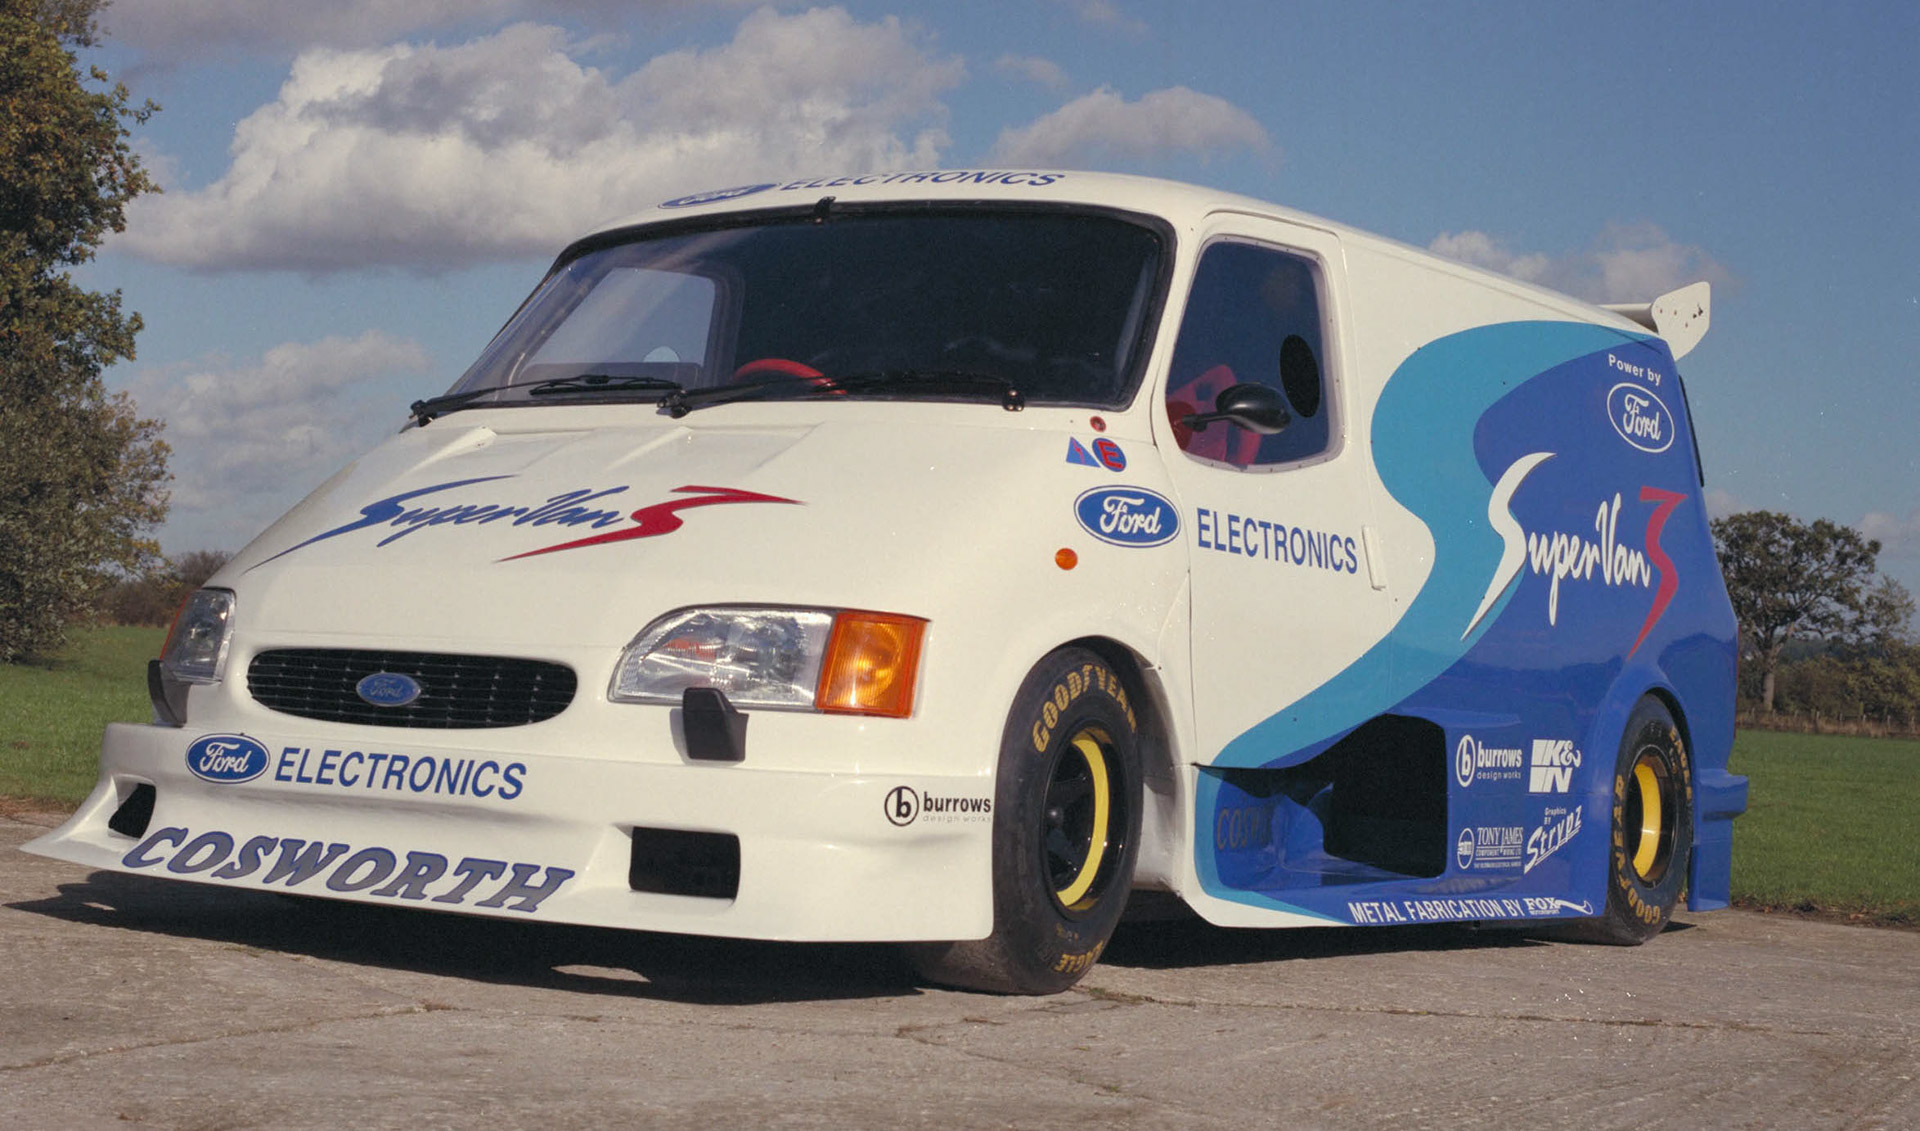 Yaklaşık 2000 beygir güce sahip Ford Electric SuperVan, Goodwood'da yarışacak